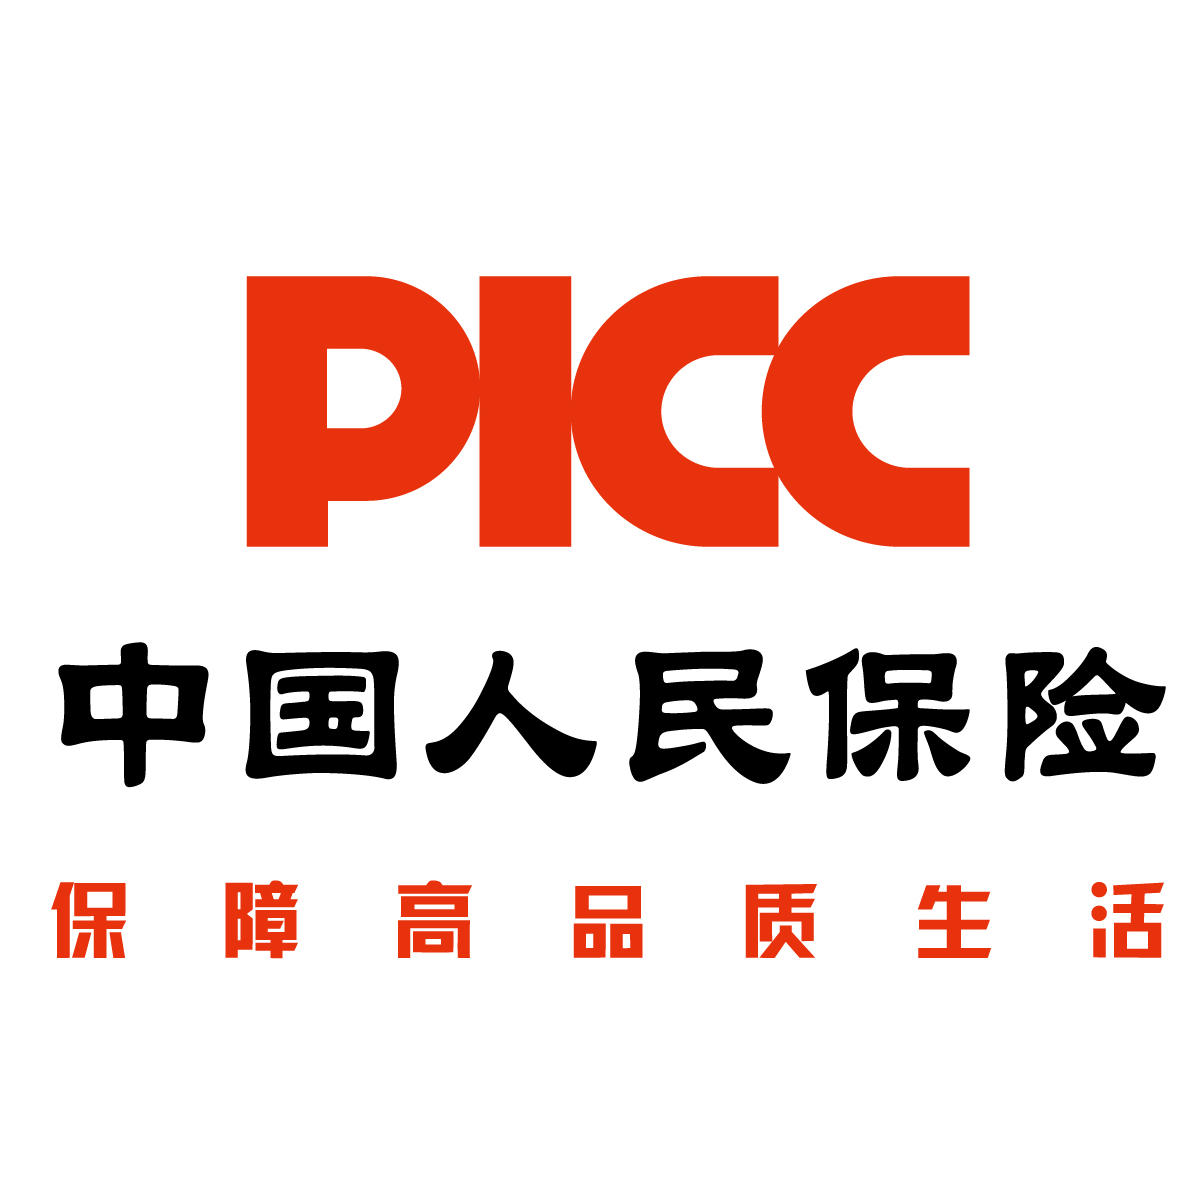 picc商业保险 中国人保商业险条款